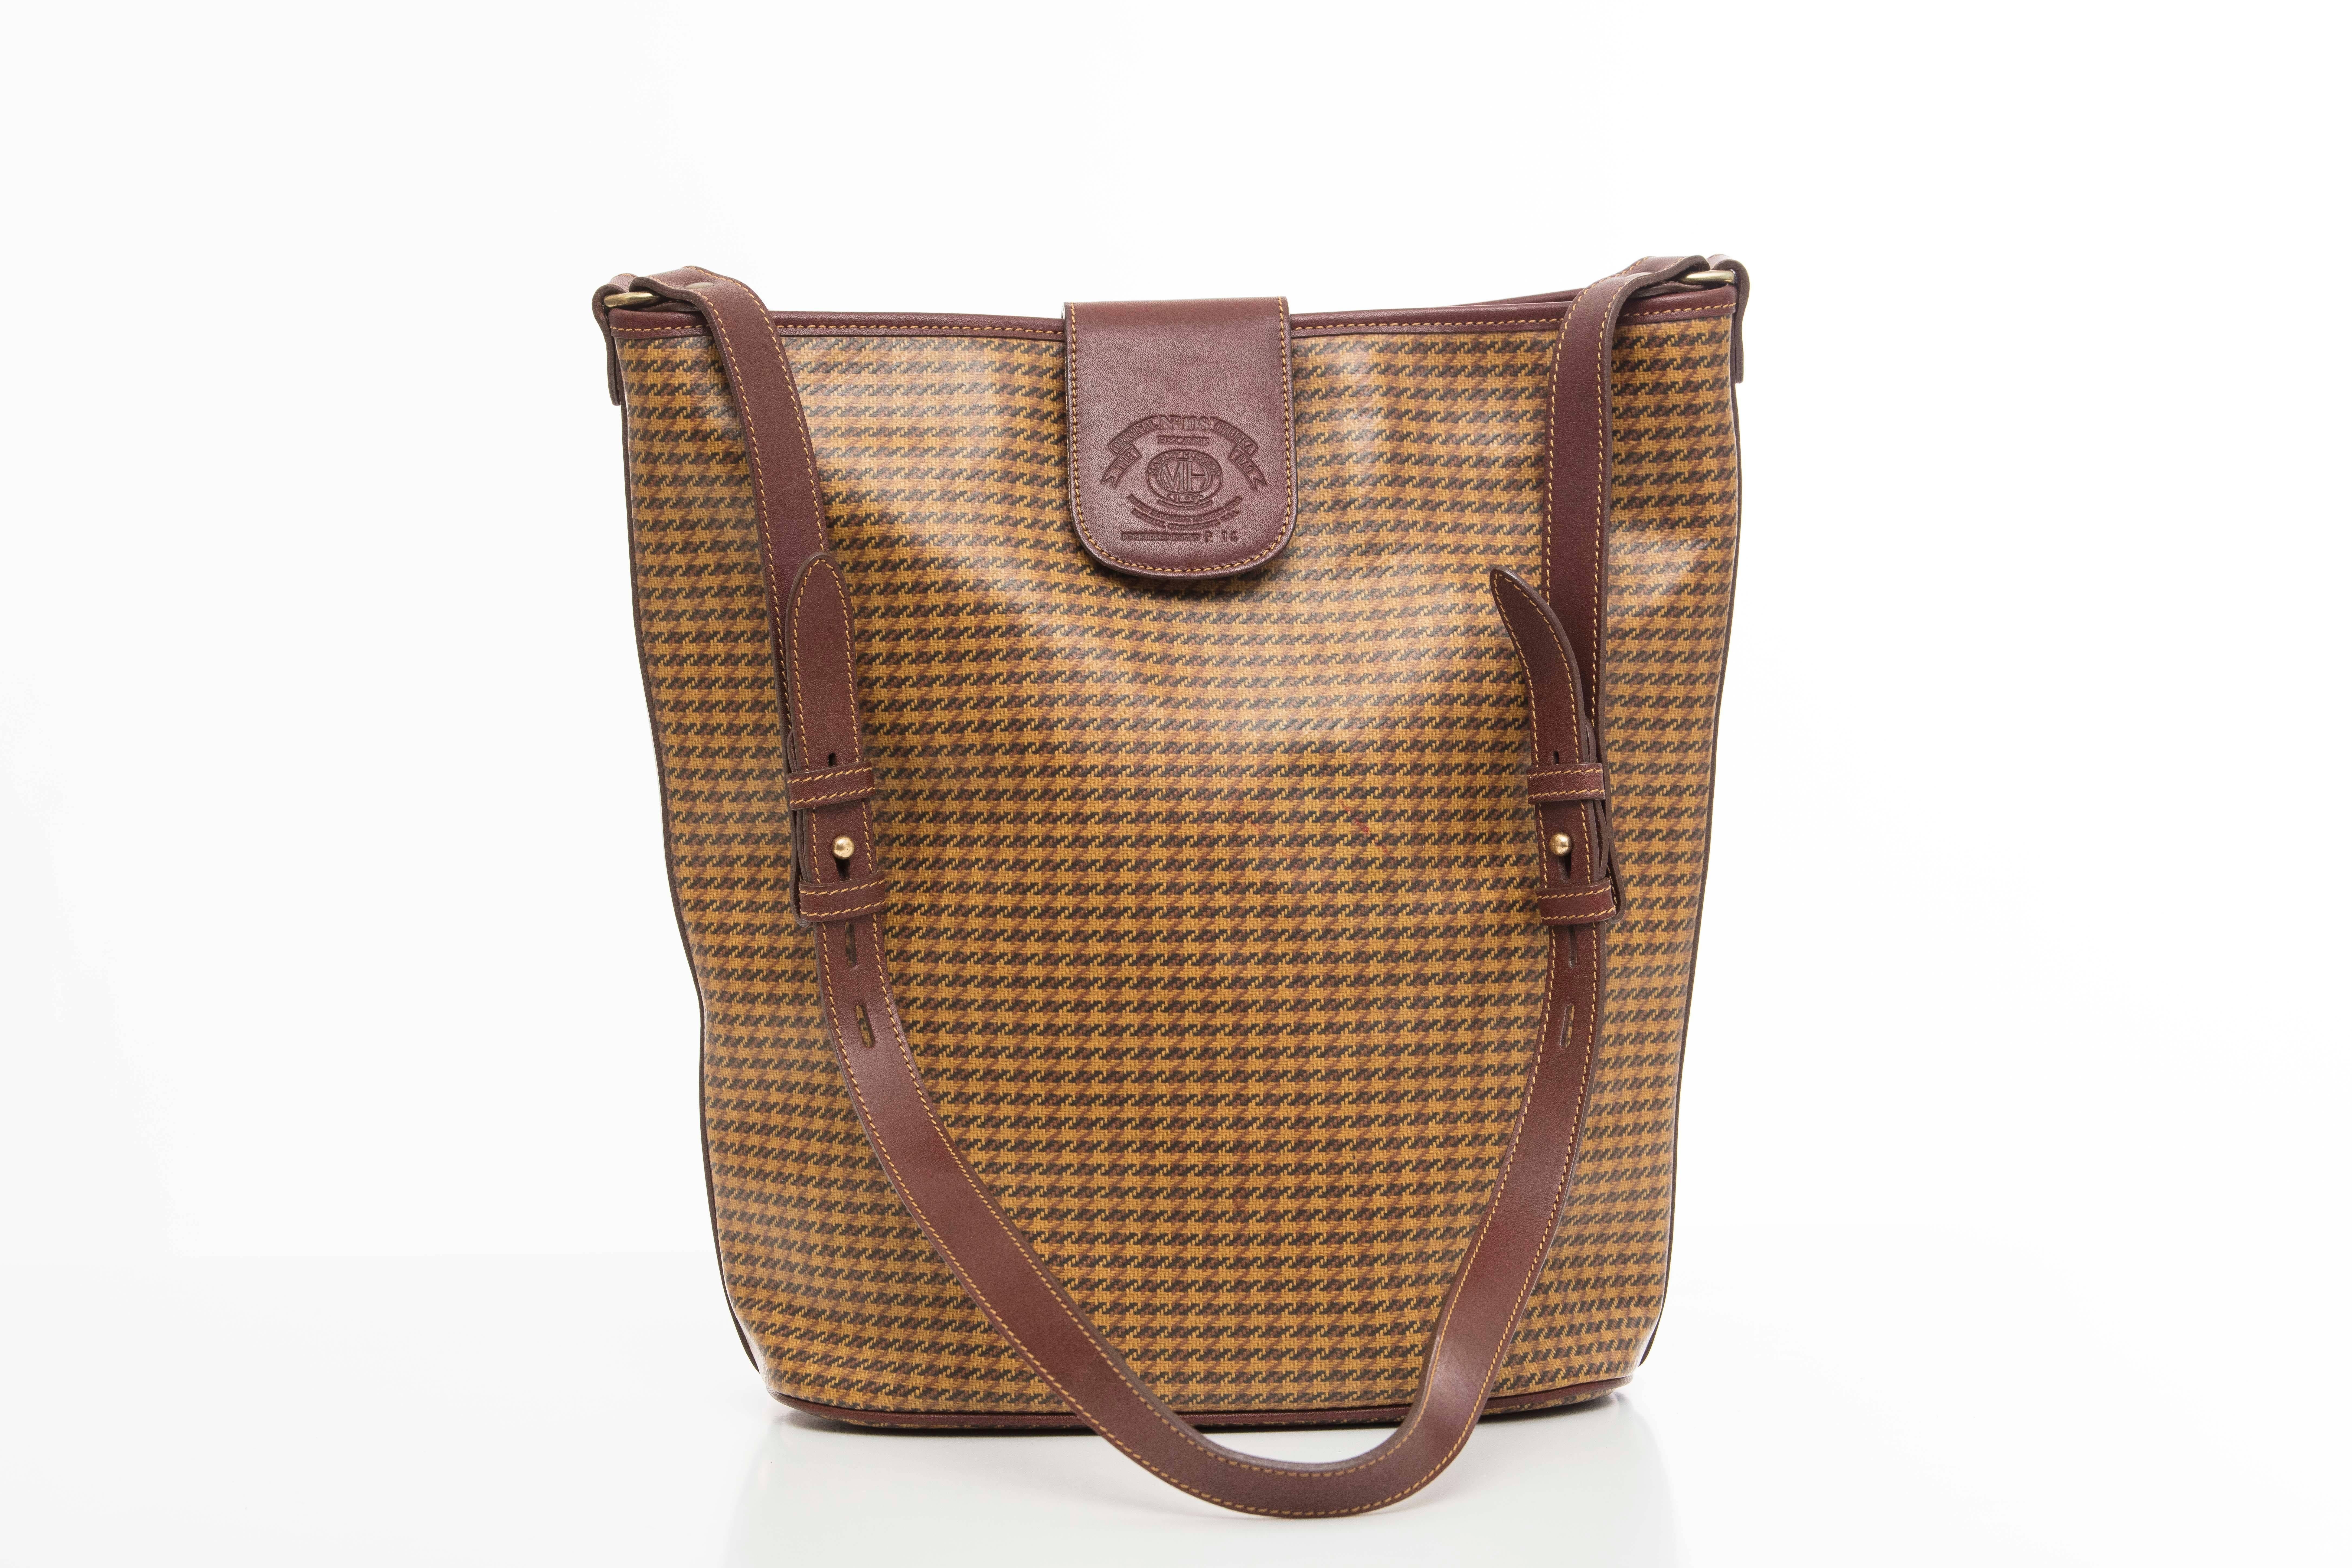 Ghurka Marley Hodgson check shoulder bag with snap front, adjustable strap and one interior zip pocket.

Width 13, Length 13, Depth 5